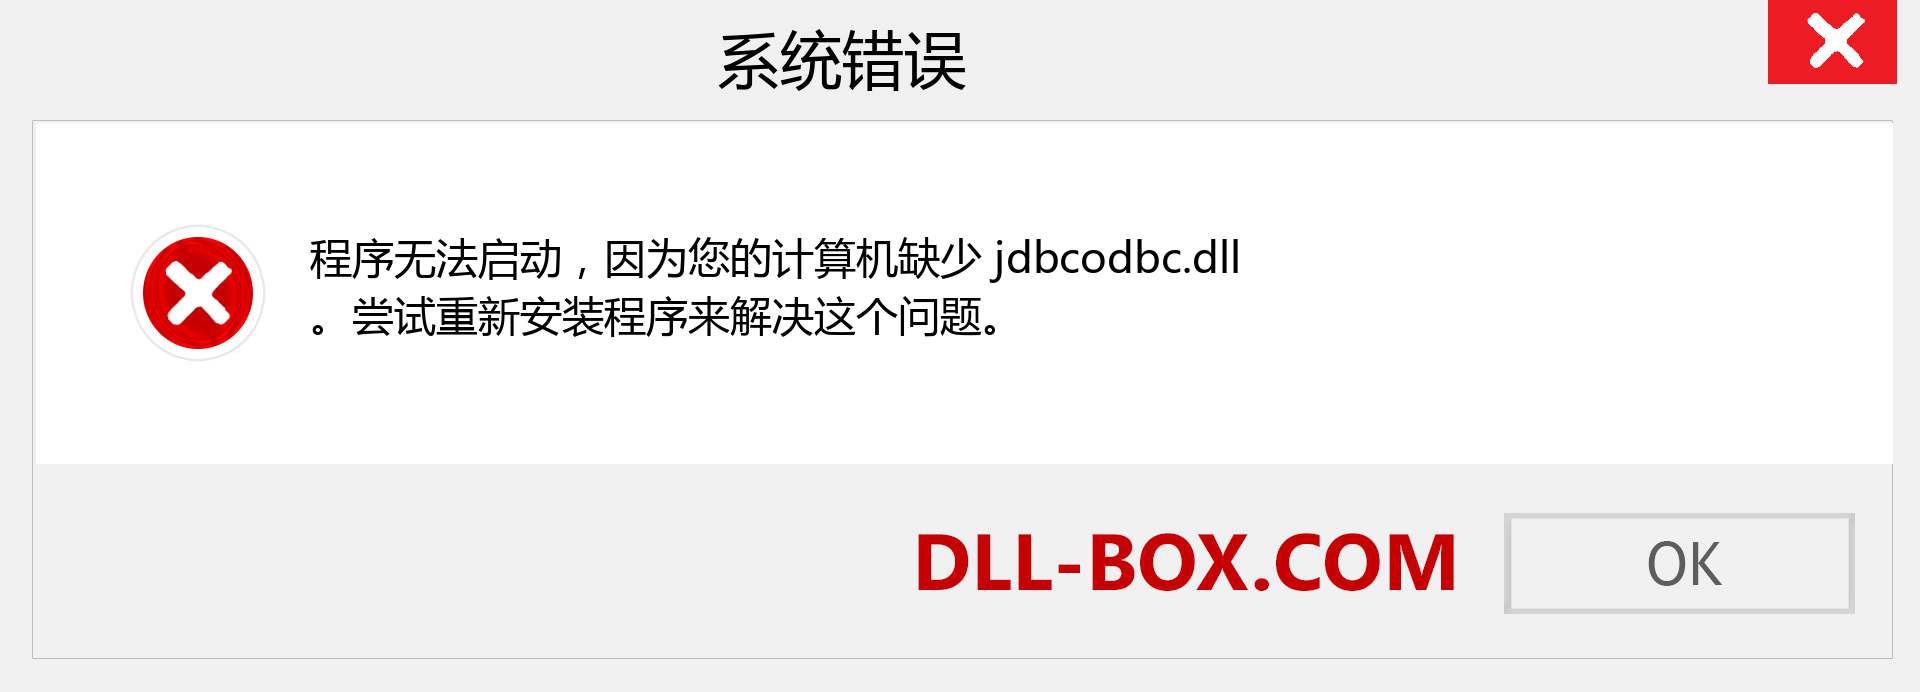 jdbcodbc.dll 文件丢失？。 适用于 Windows 7、8、10 的下载 - 修复 Windows、照片、图像上的 jdbcodbc dll 丢失错误